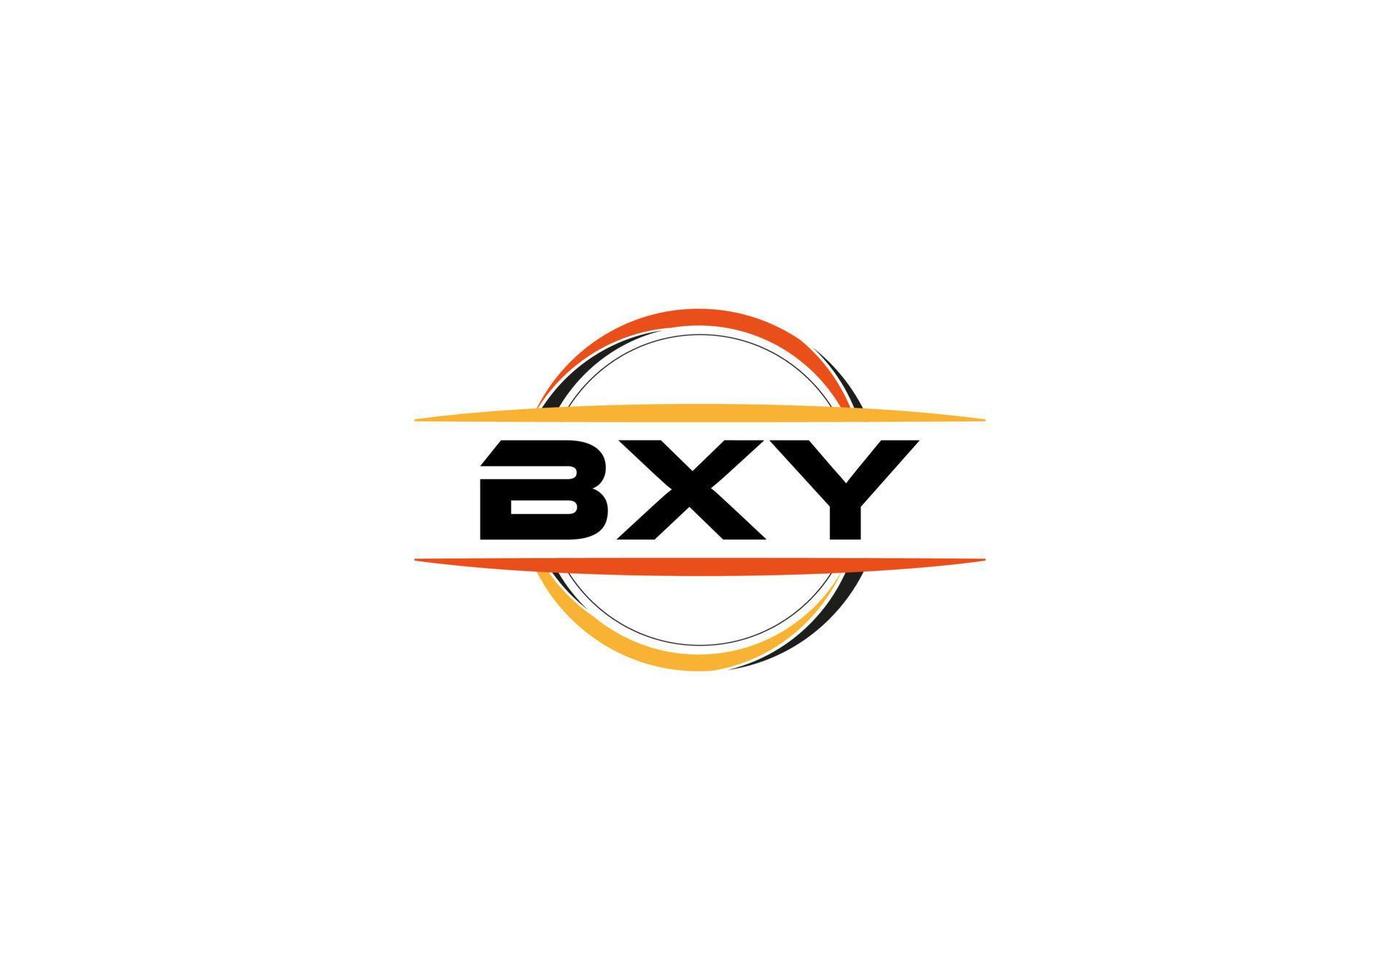 bx lettera reali mandala forma logo. bx spazzola arte logo. bx logo per un' azienda, attività commerciale, e commerciale uso. vettore